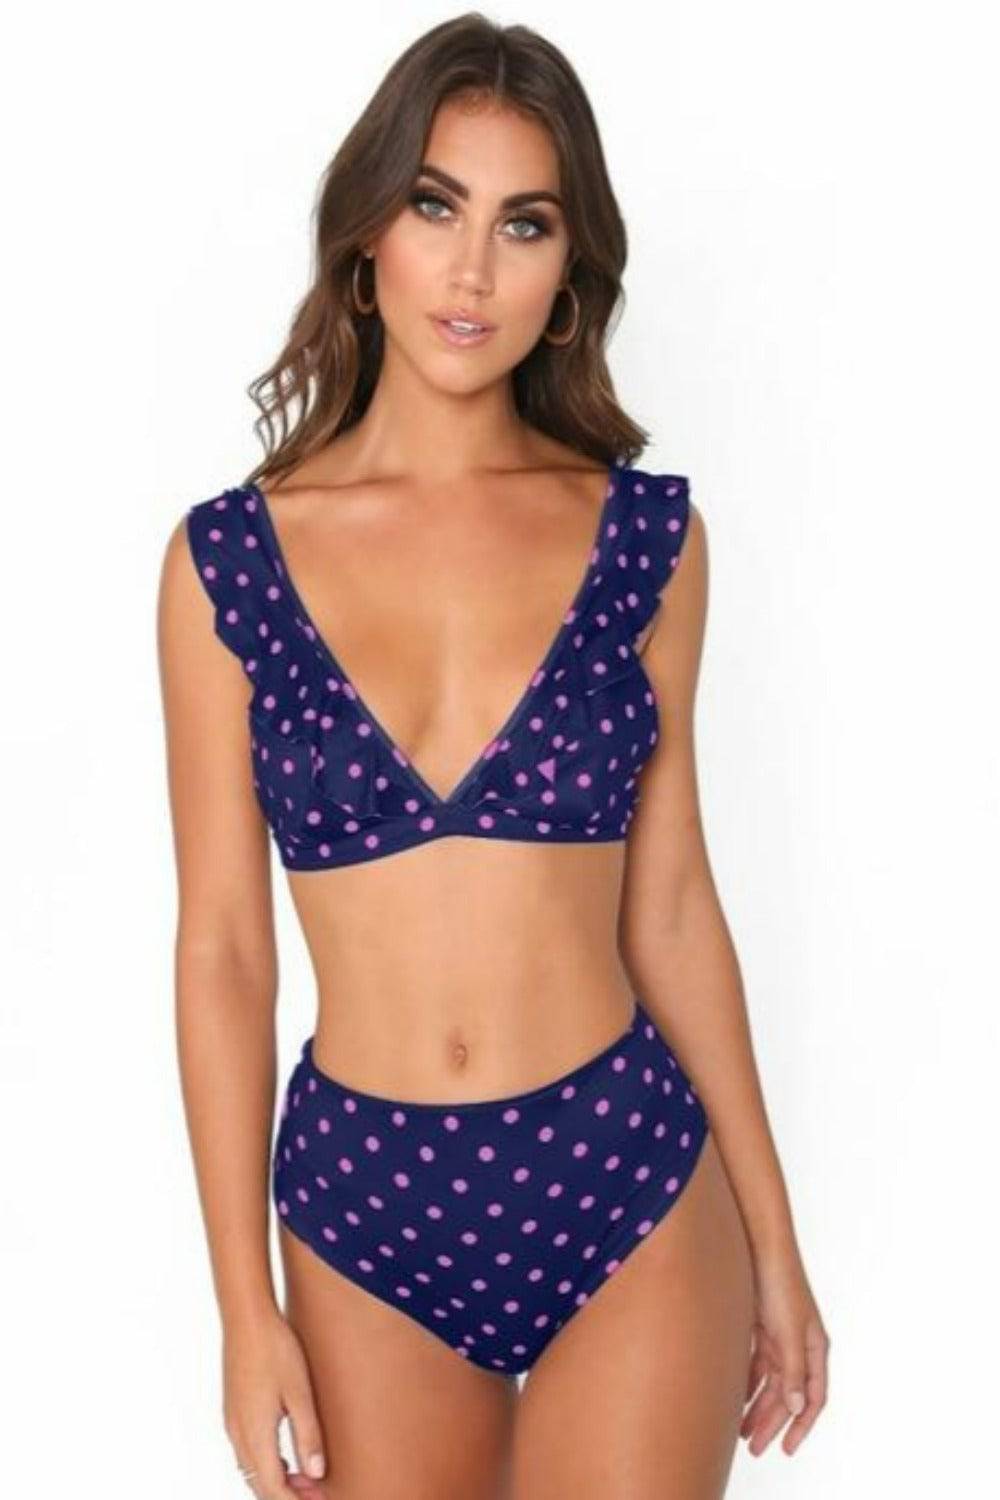 Rachel Polka Dot Ruffle Purple High Waisted Bikini - TGC Boutique - Bikini